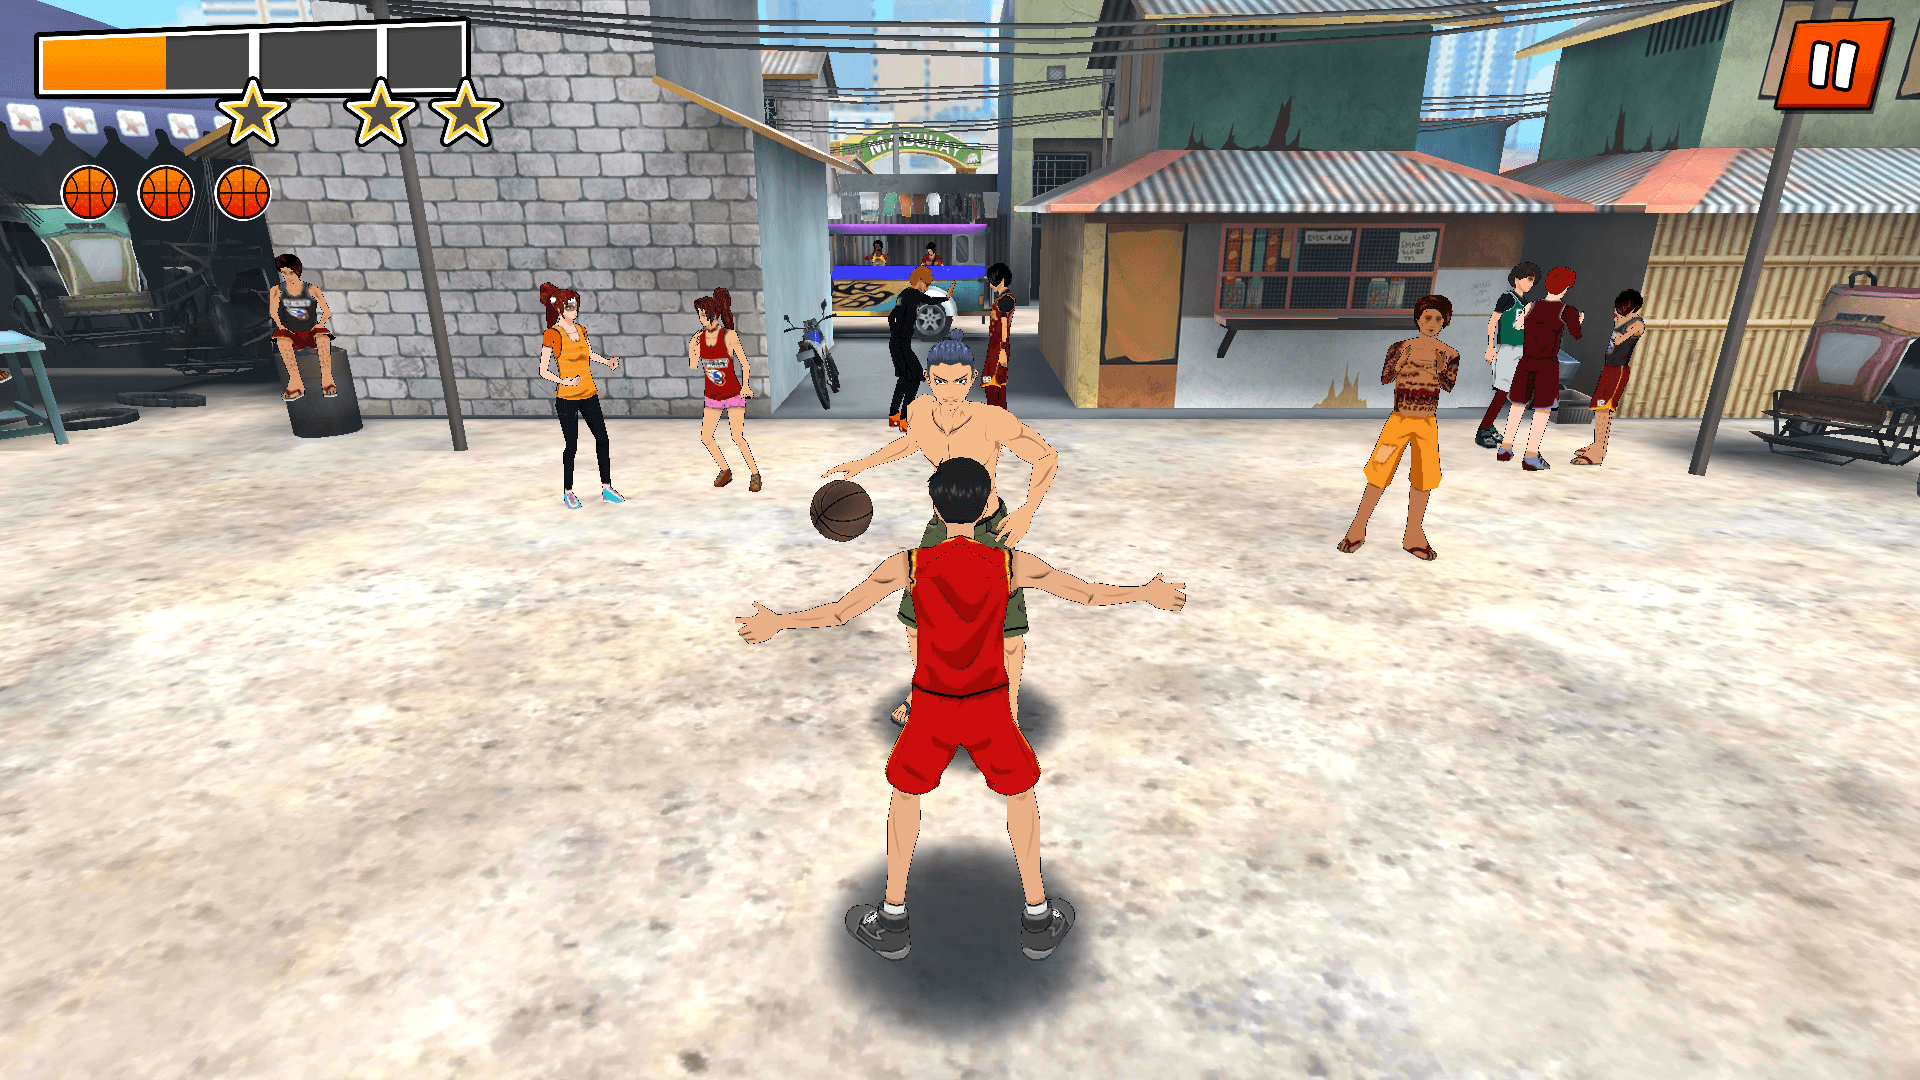 Screengrab from Barangay Basketball 